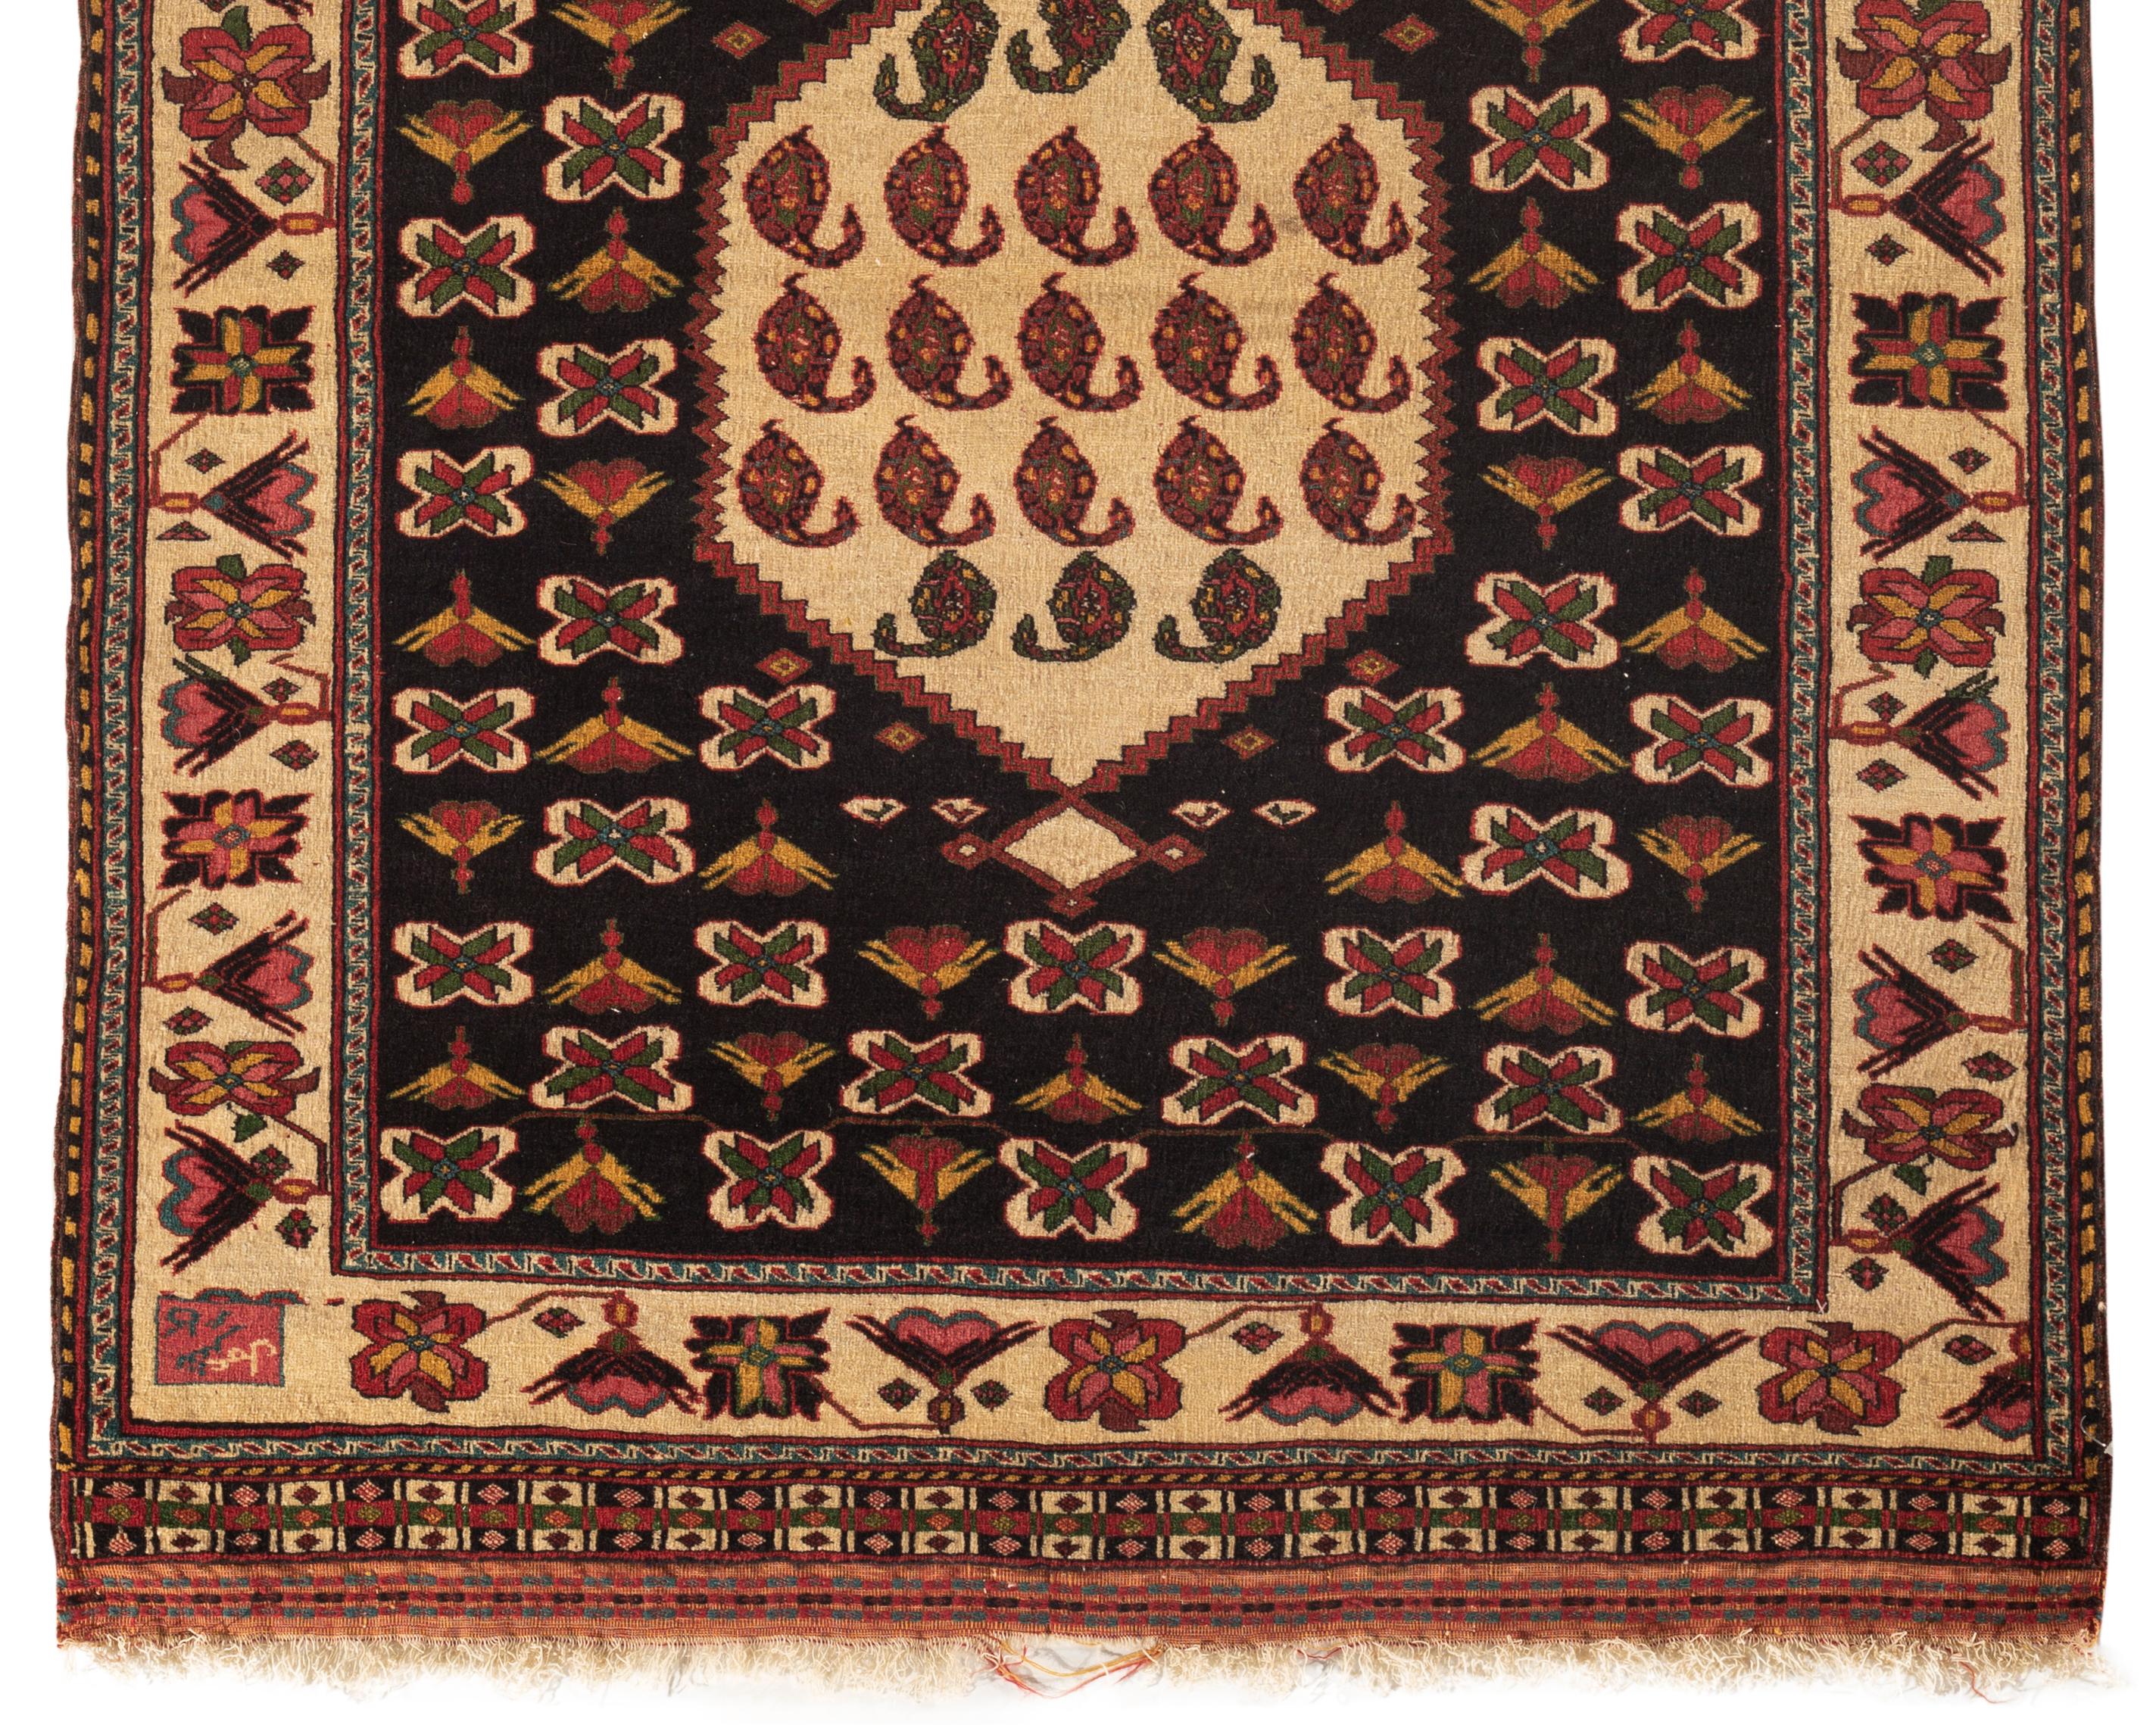 Tapis Persan Vintage Afshar. Les tapis Afshar sont des motifs tribaux et proviennent de la tribu Afshar basée principalement dans la région d'Azerbaïdjan en Perse. Ils sont normalement de petite taille (3-4 pieds x 5-7 pieds) et il est très rare de